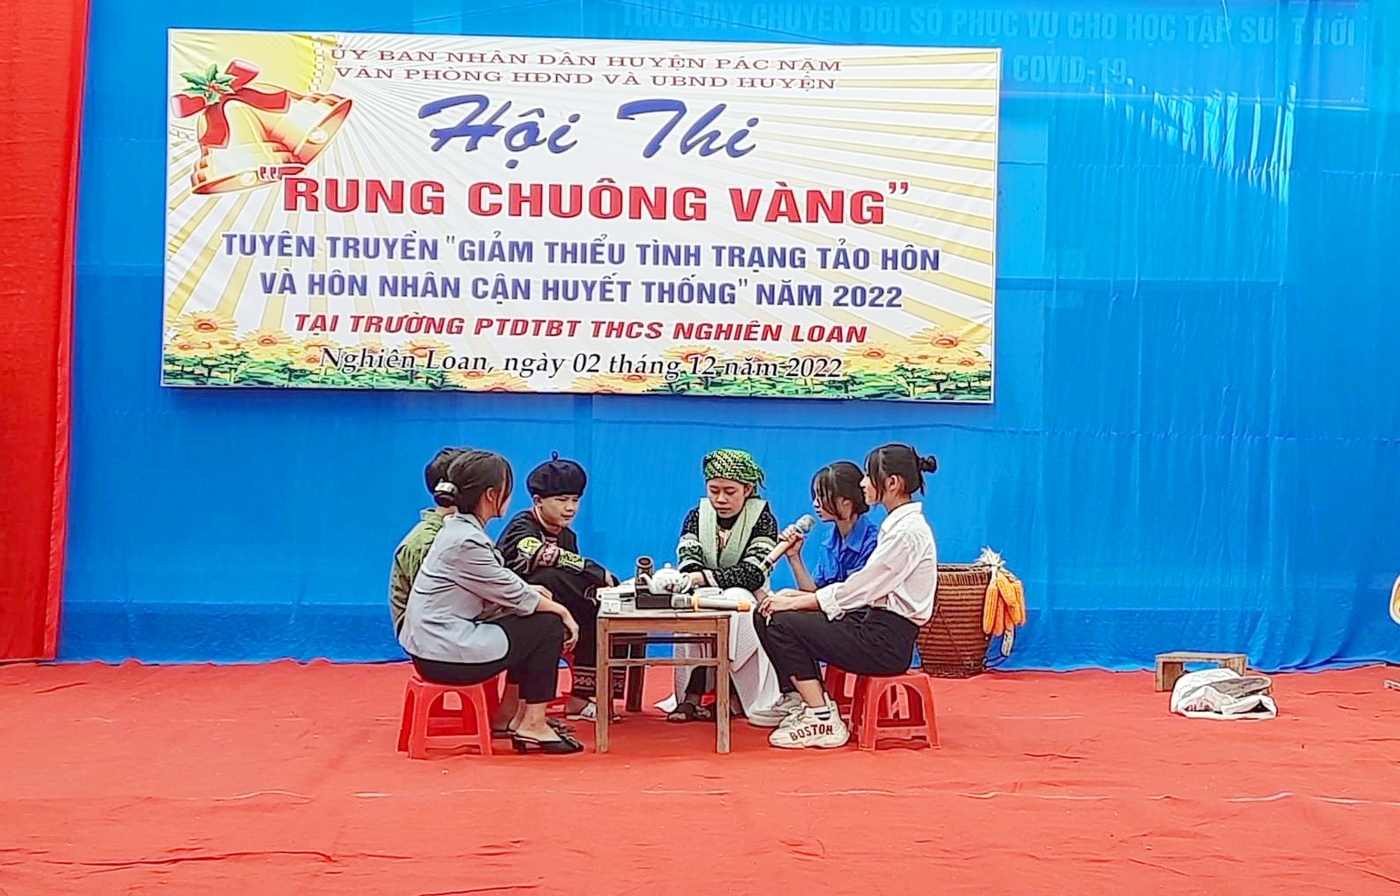 Huyện Pác Nặm tổ chức tuyên truyền "Giảm thiểu tình trạng tảo hôn và hôn nhân cận huyết thống" bằng hình thức "Rung chuông vàng" tại Trường PTDTBT THCS Nghiên Loan.